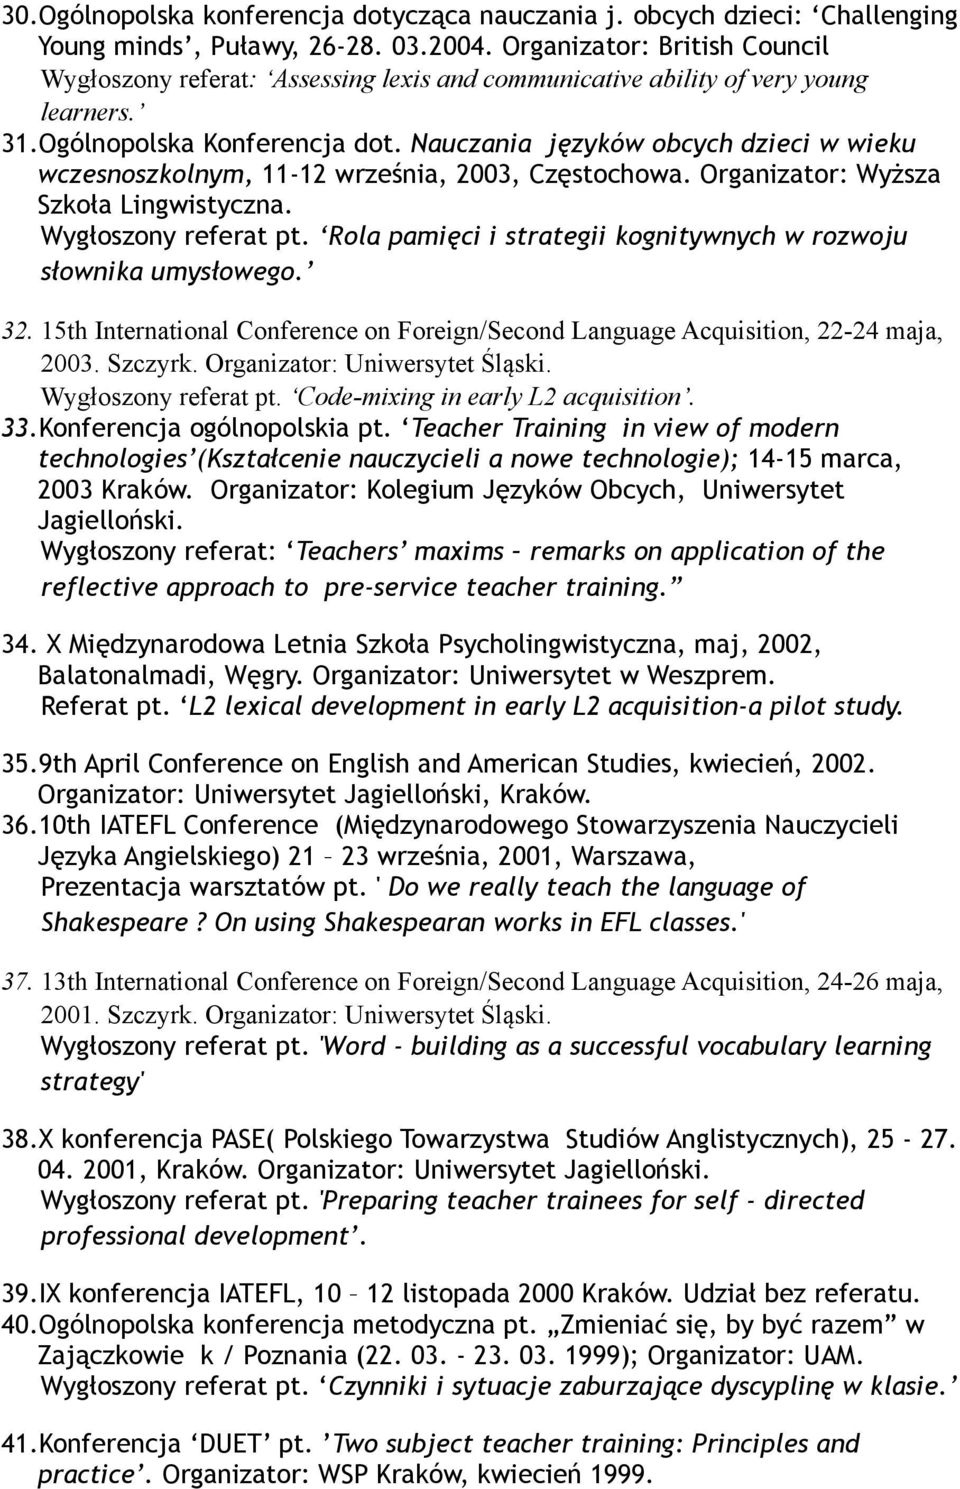 Nauczania języków obcych dzieci w wieku wczesnoszkolnym, 11-12 września, 2003, Częstochowa. Organizator: Wyższa Szkoła Lingwistyczna. Wygłoszony referat pt.